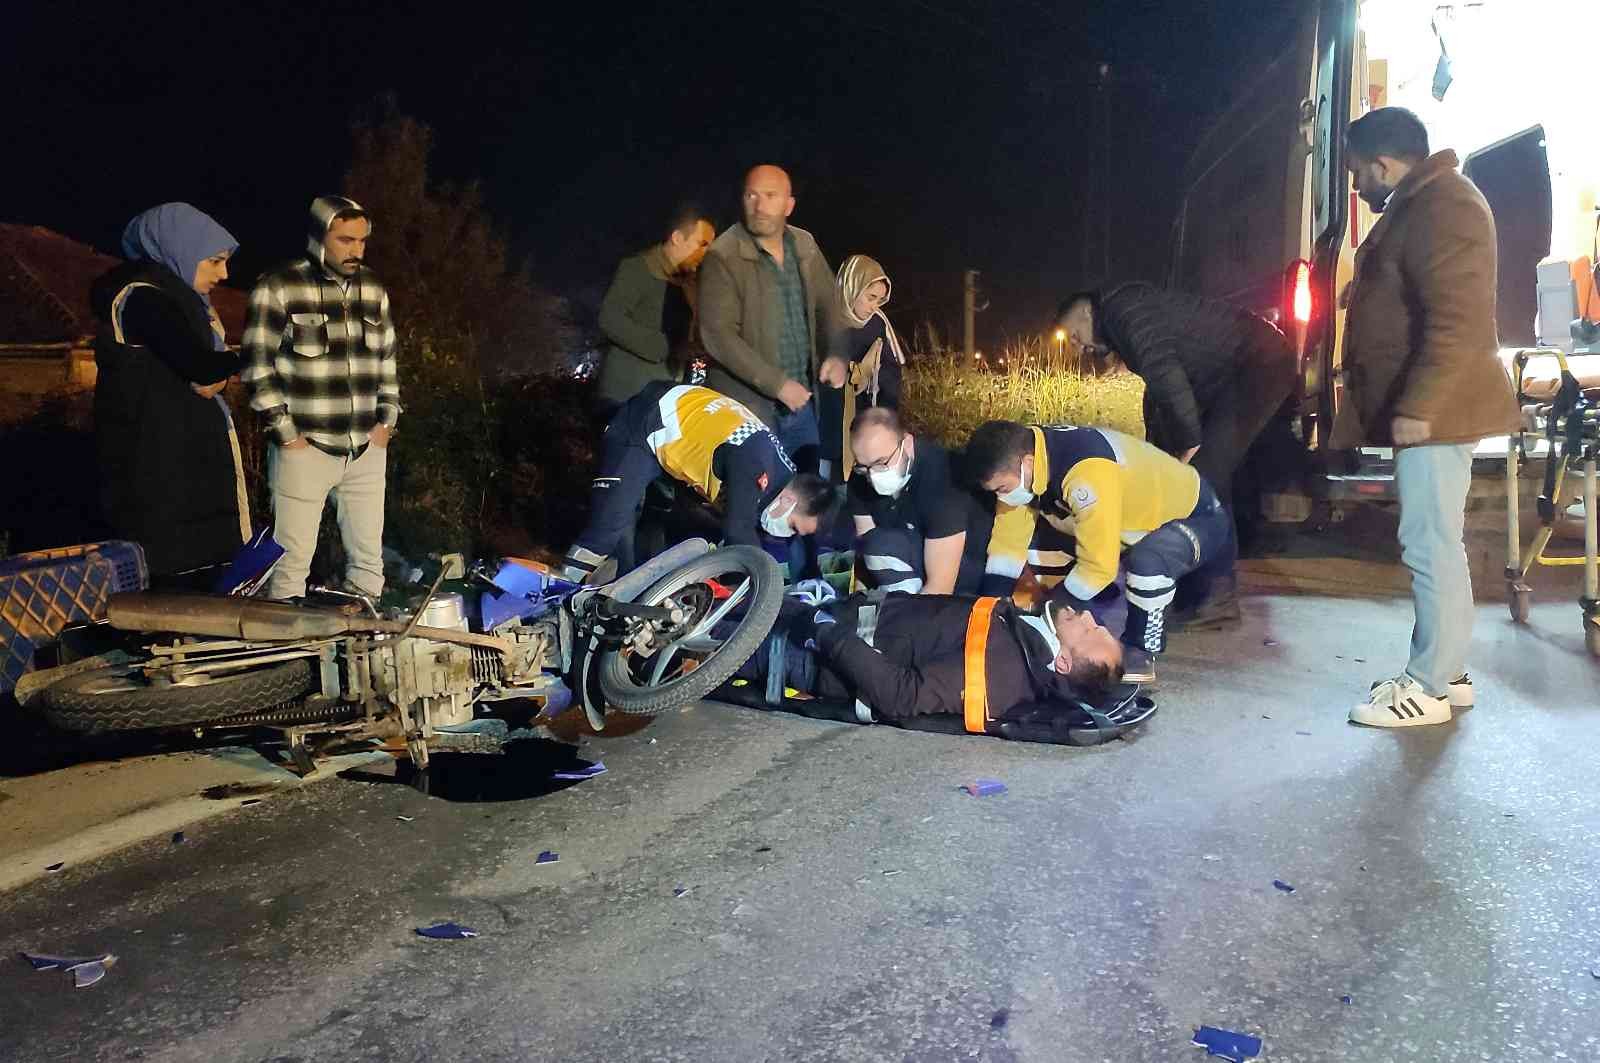 Sakarya’da otomobil ile motosiklet çarpıştı: 2 yaralı #sakarya